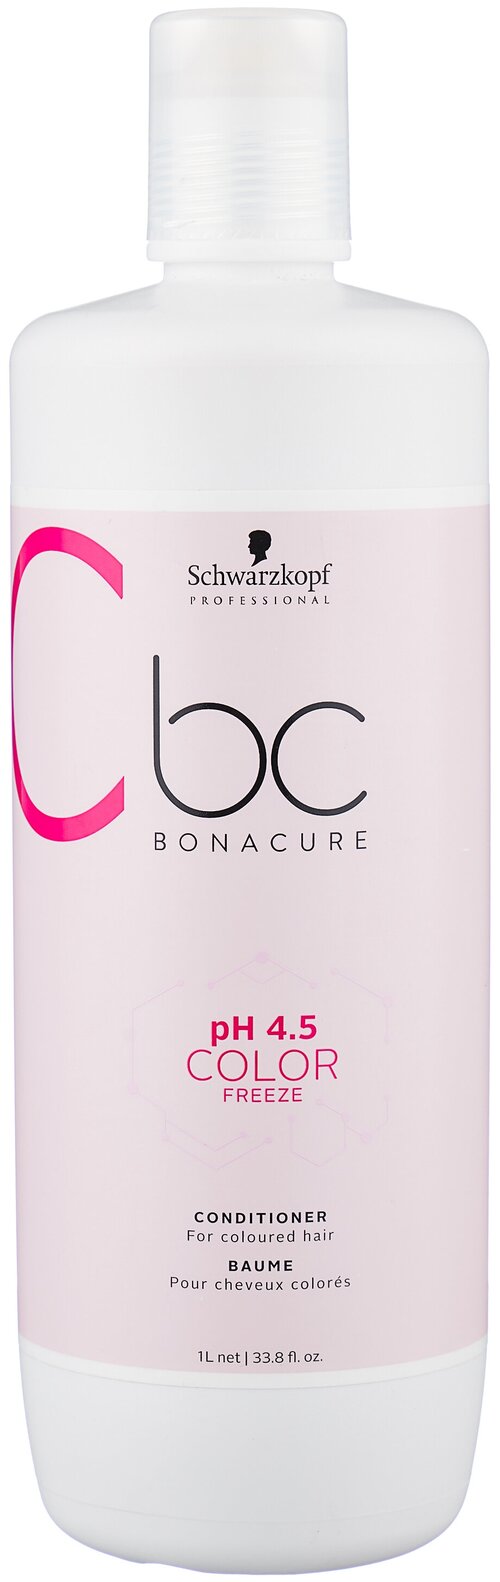 Schwarzkopf Professional кондиционер pH 4.5 Color Freeze для окрашенных и мелированных волос, 1000 мл